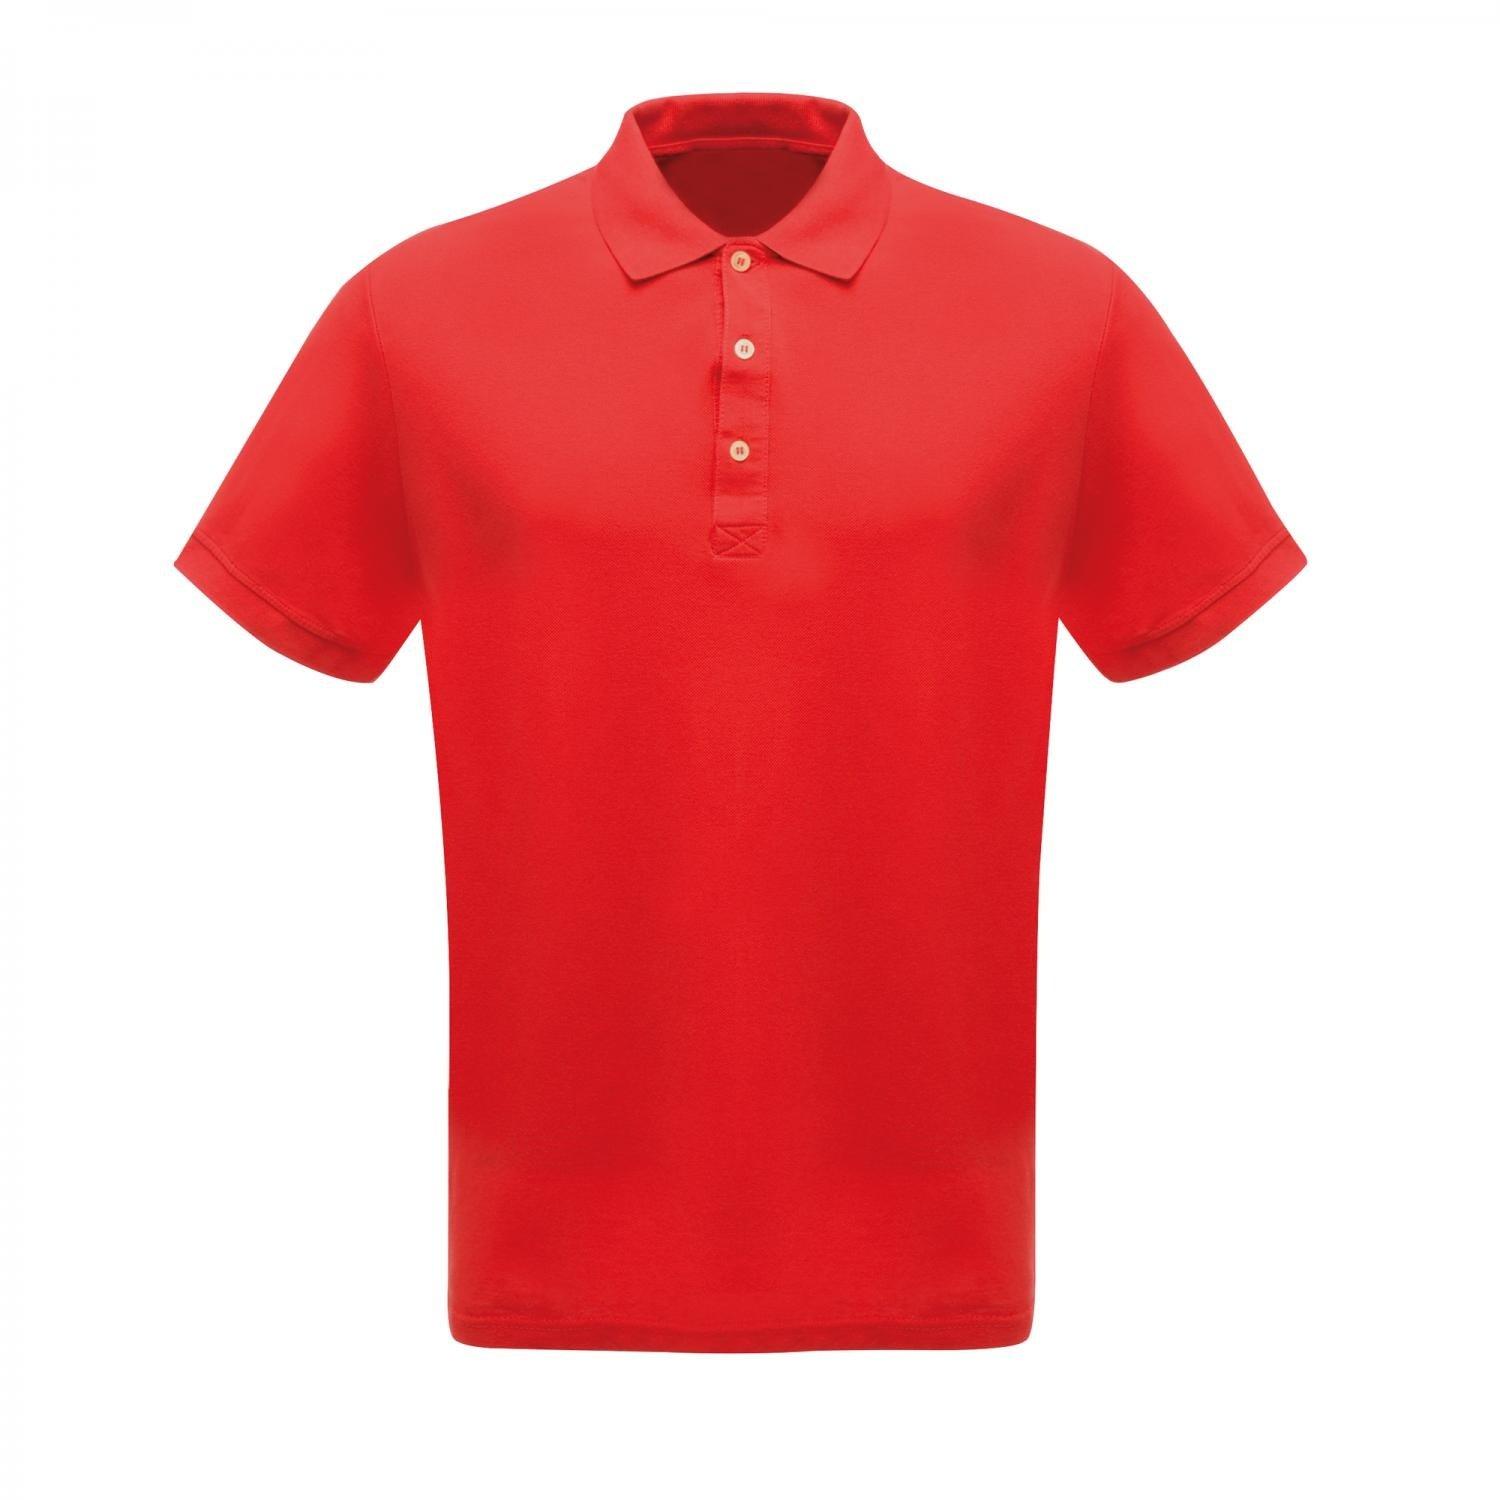 Professionell Klassik Poloshirt Herren Rot Bunt S von Regatta